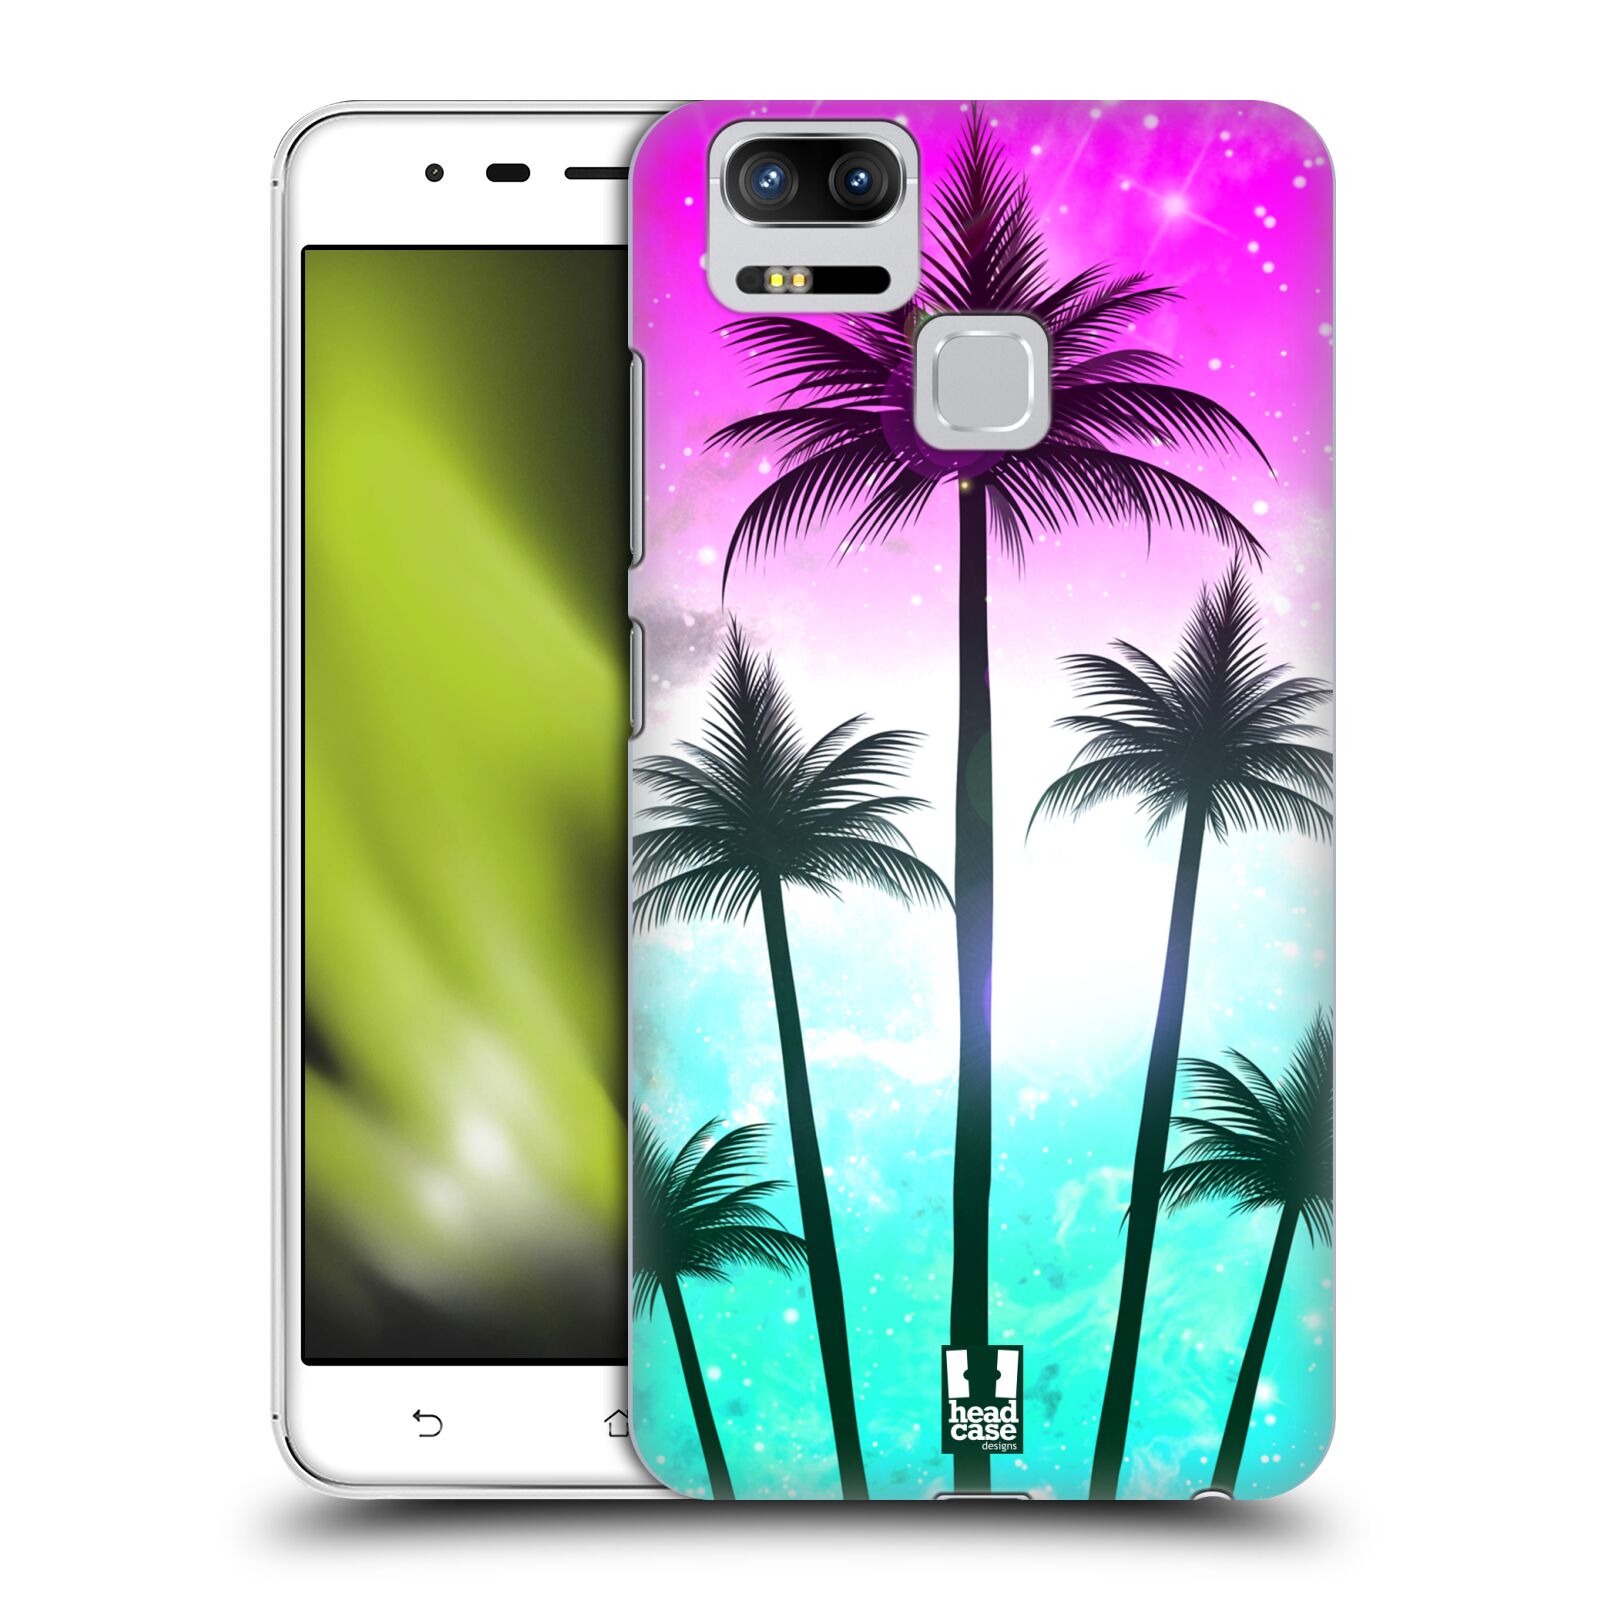 HEAD CASE plastový obal na mobil Asus Zenfone 3 Zoom ZE553KL vzor Kreslený motiv silueta moře a palmy RŮŽOVÁ A TYRKYS